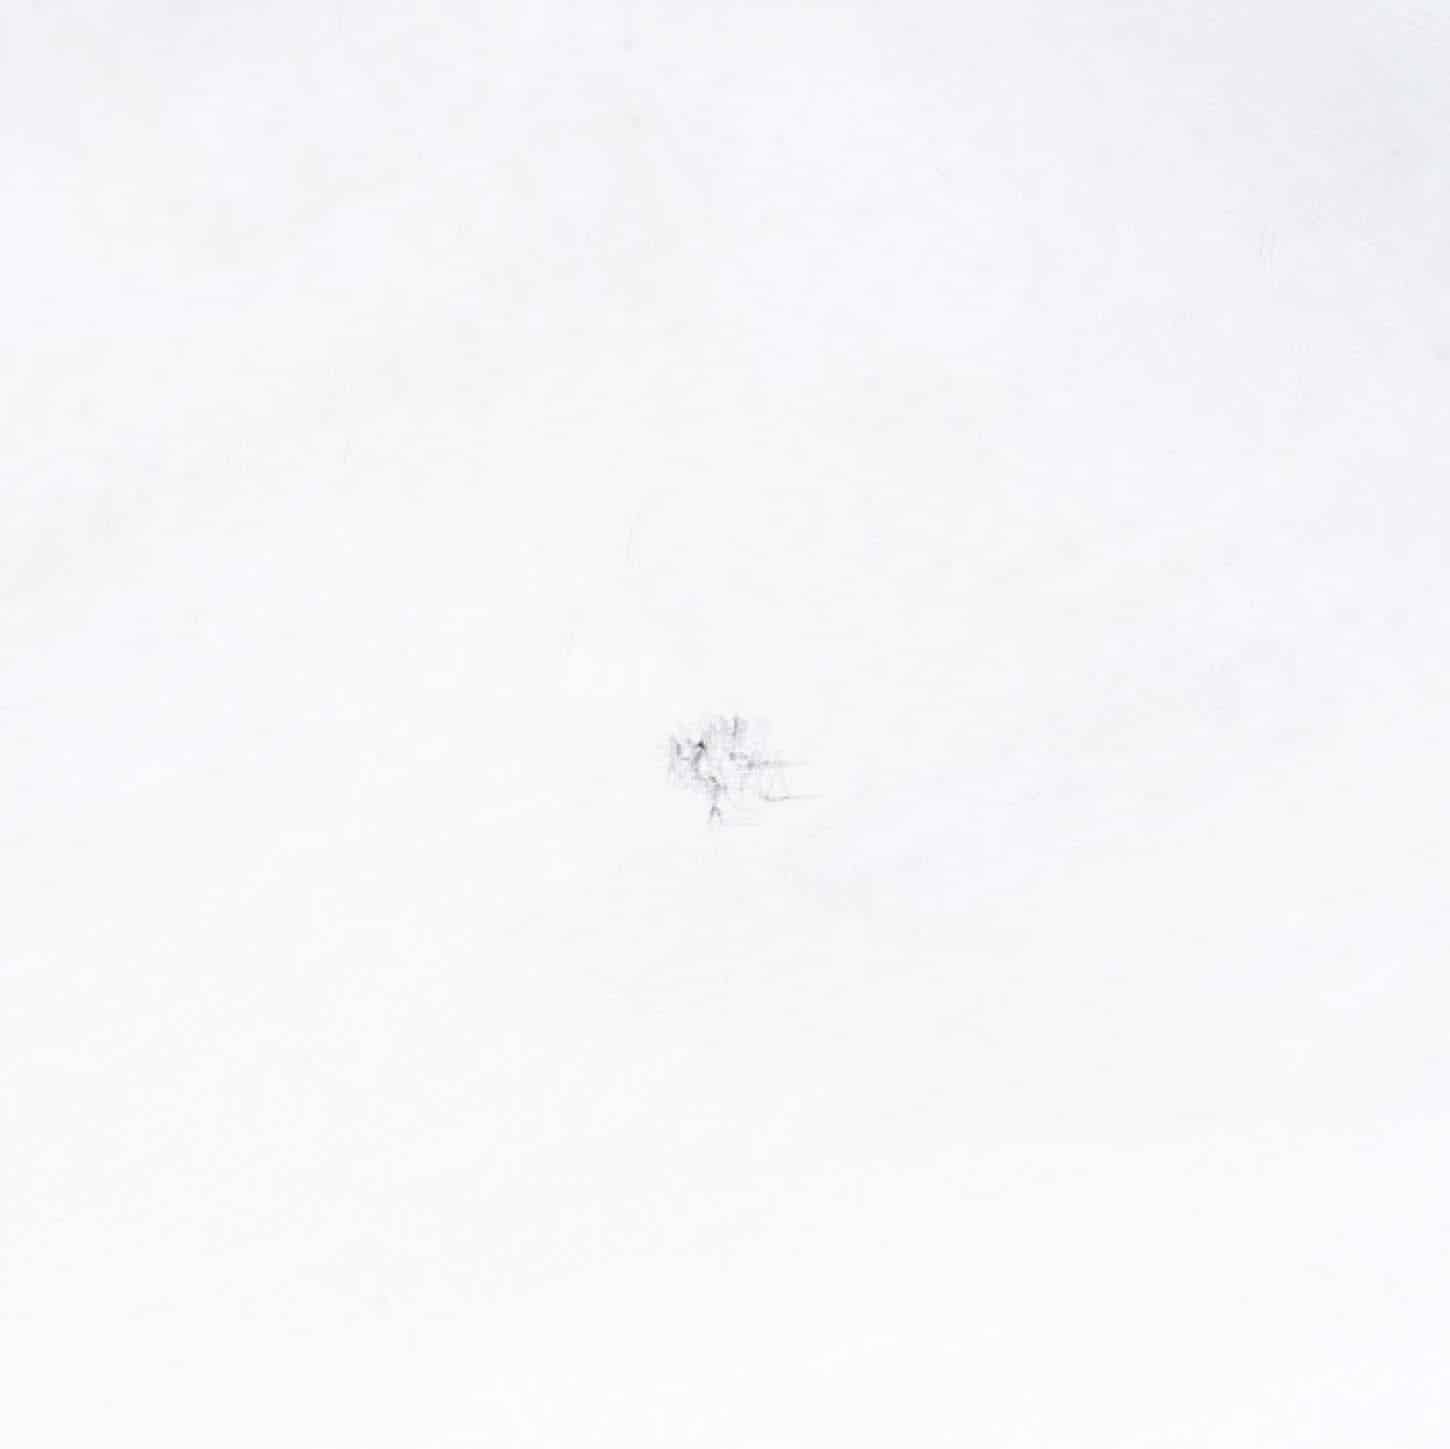 Eric Bourret, Carnet de marche - France, Oisans 2014, tirage jet d’encre baryté 30 x 30 cm, signé - numéroté 1/5